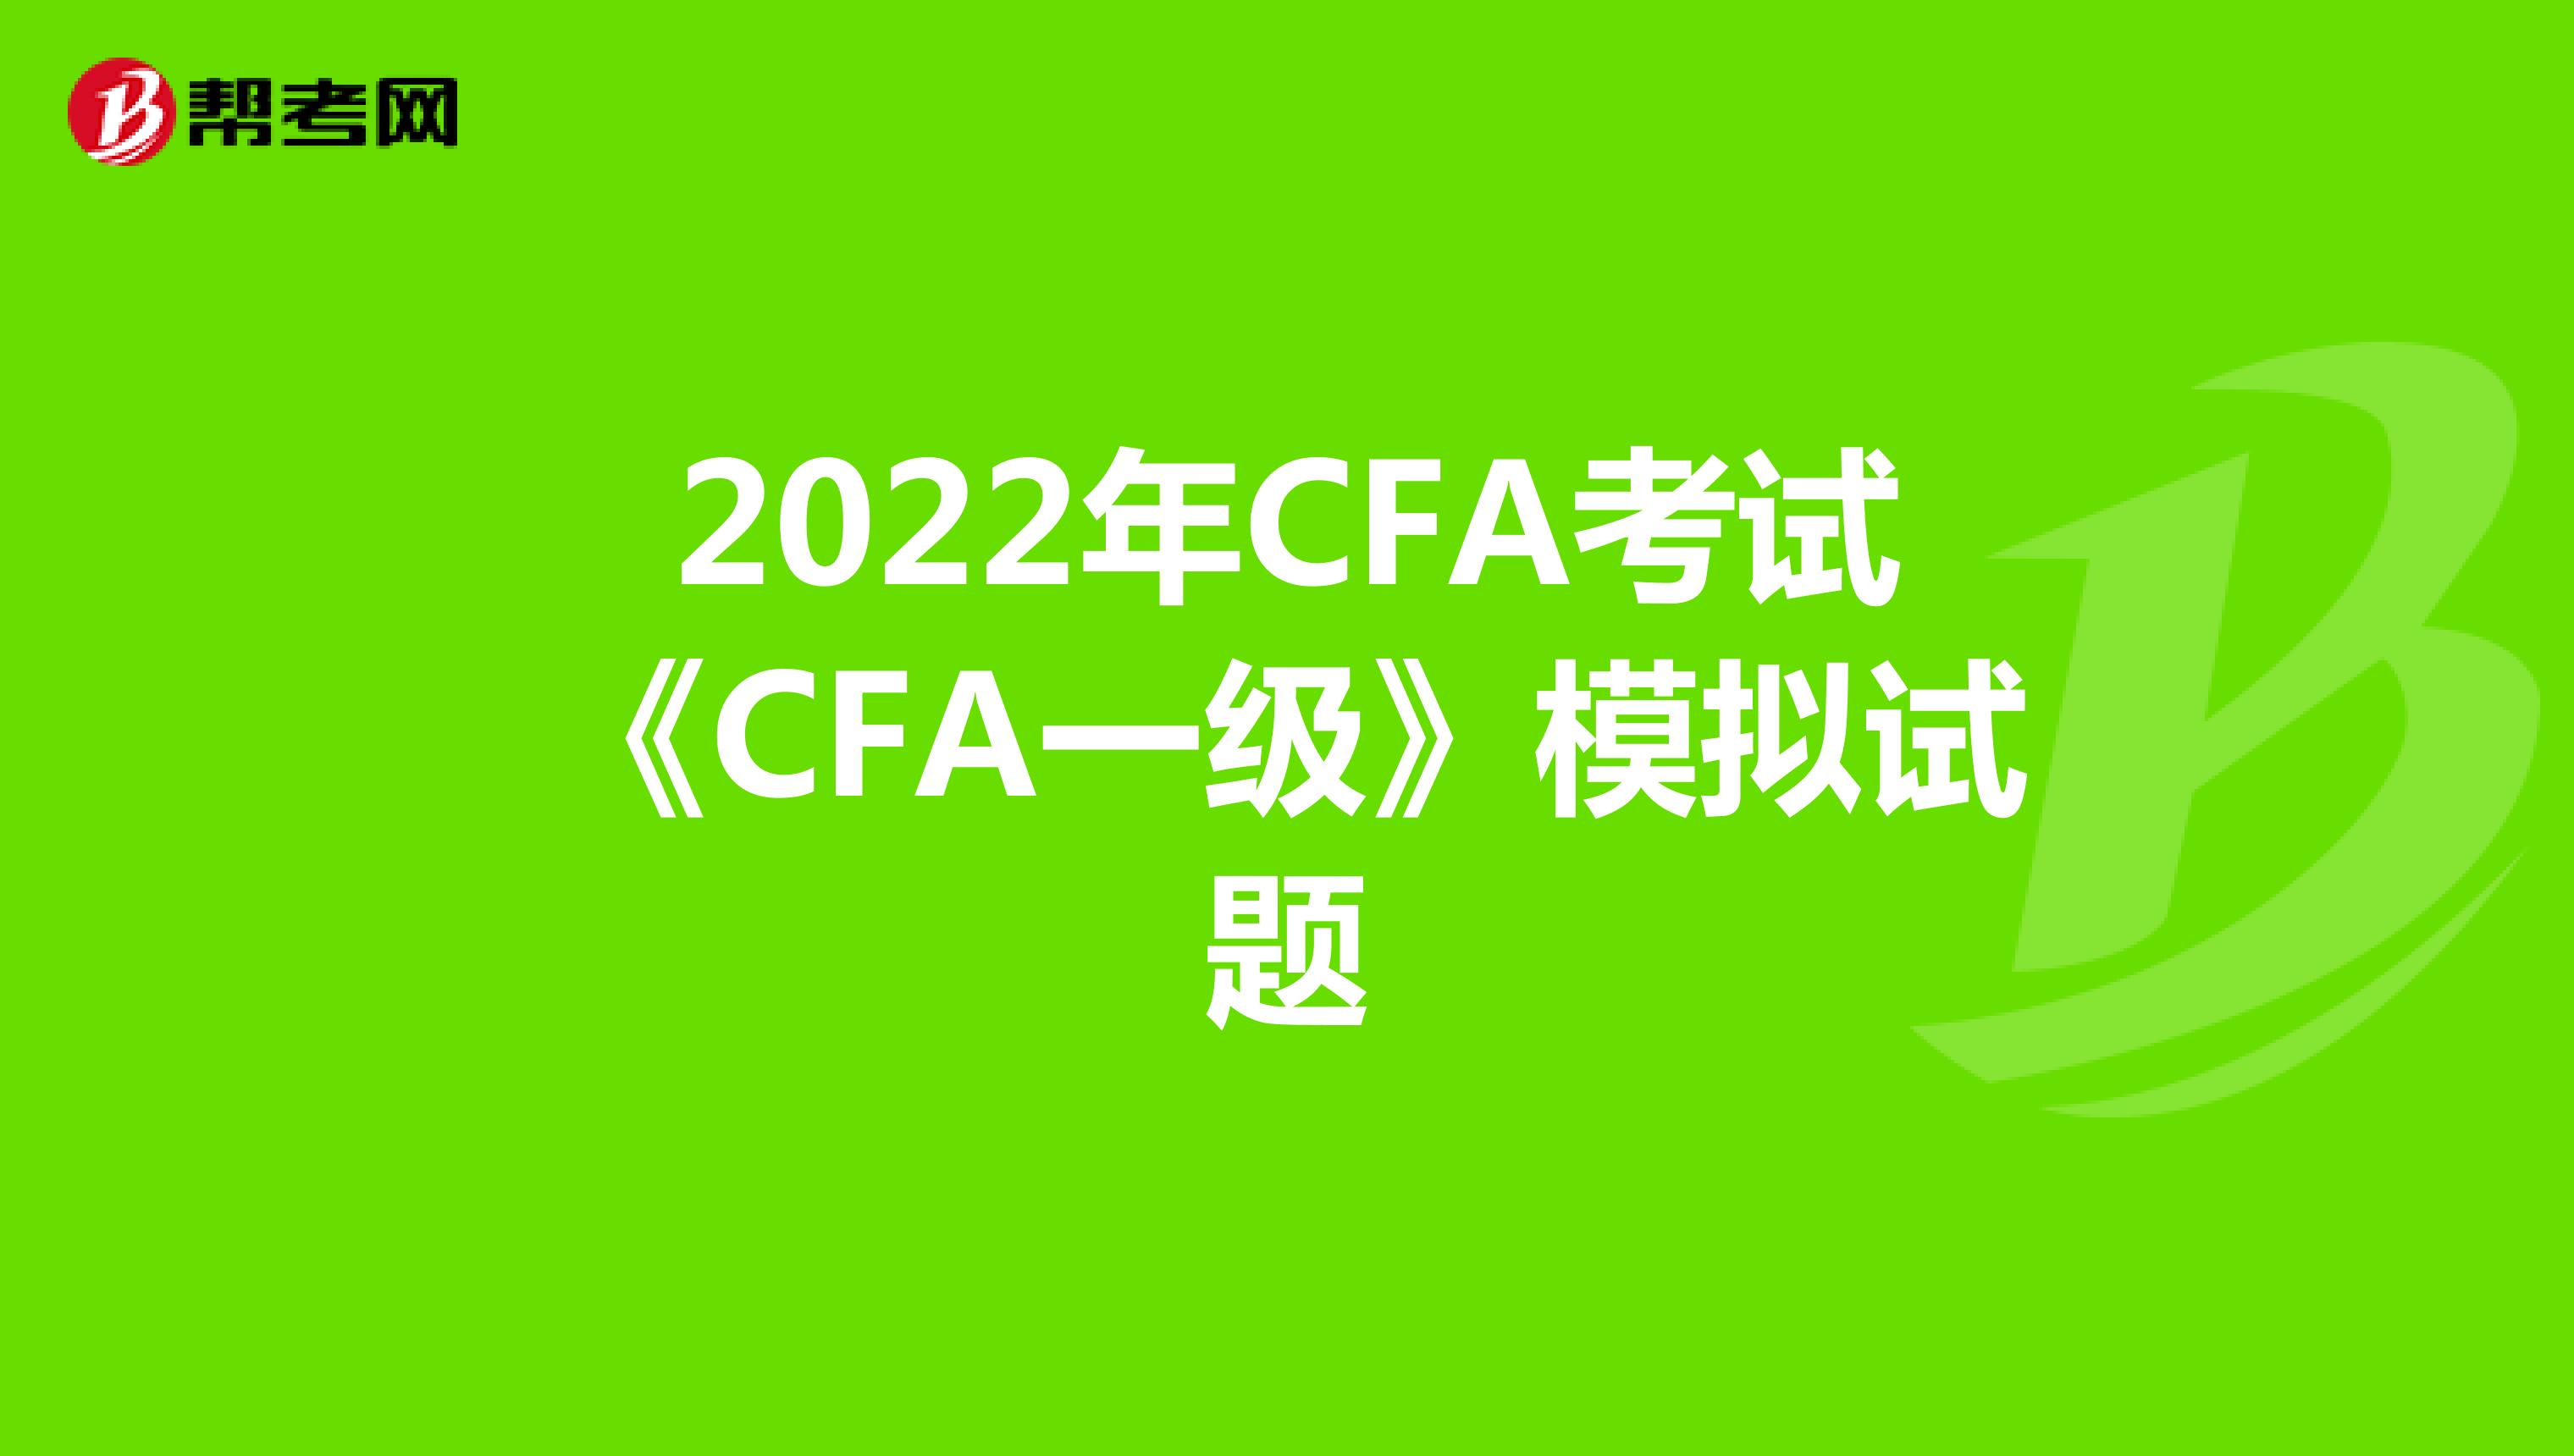 2022年CFA考试《CFA一级》模拟试题